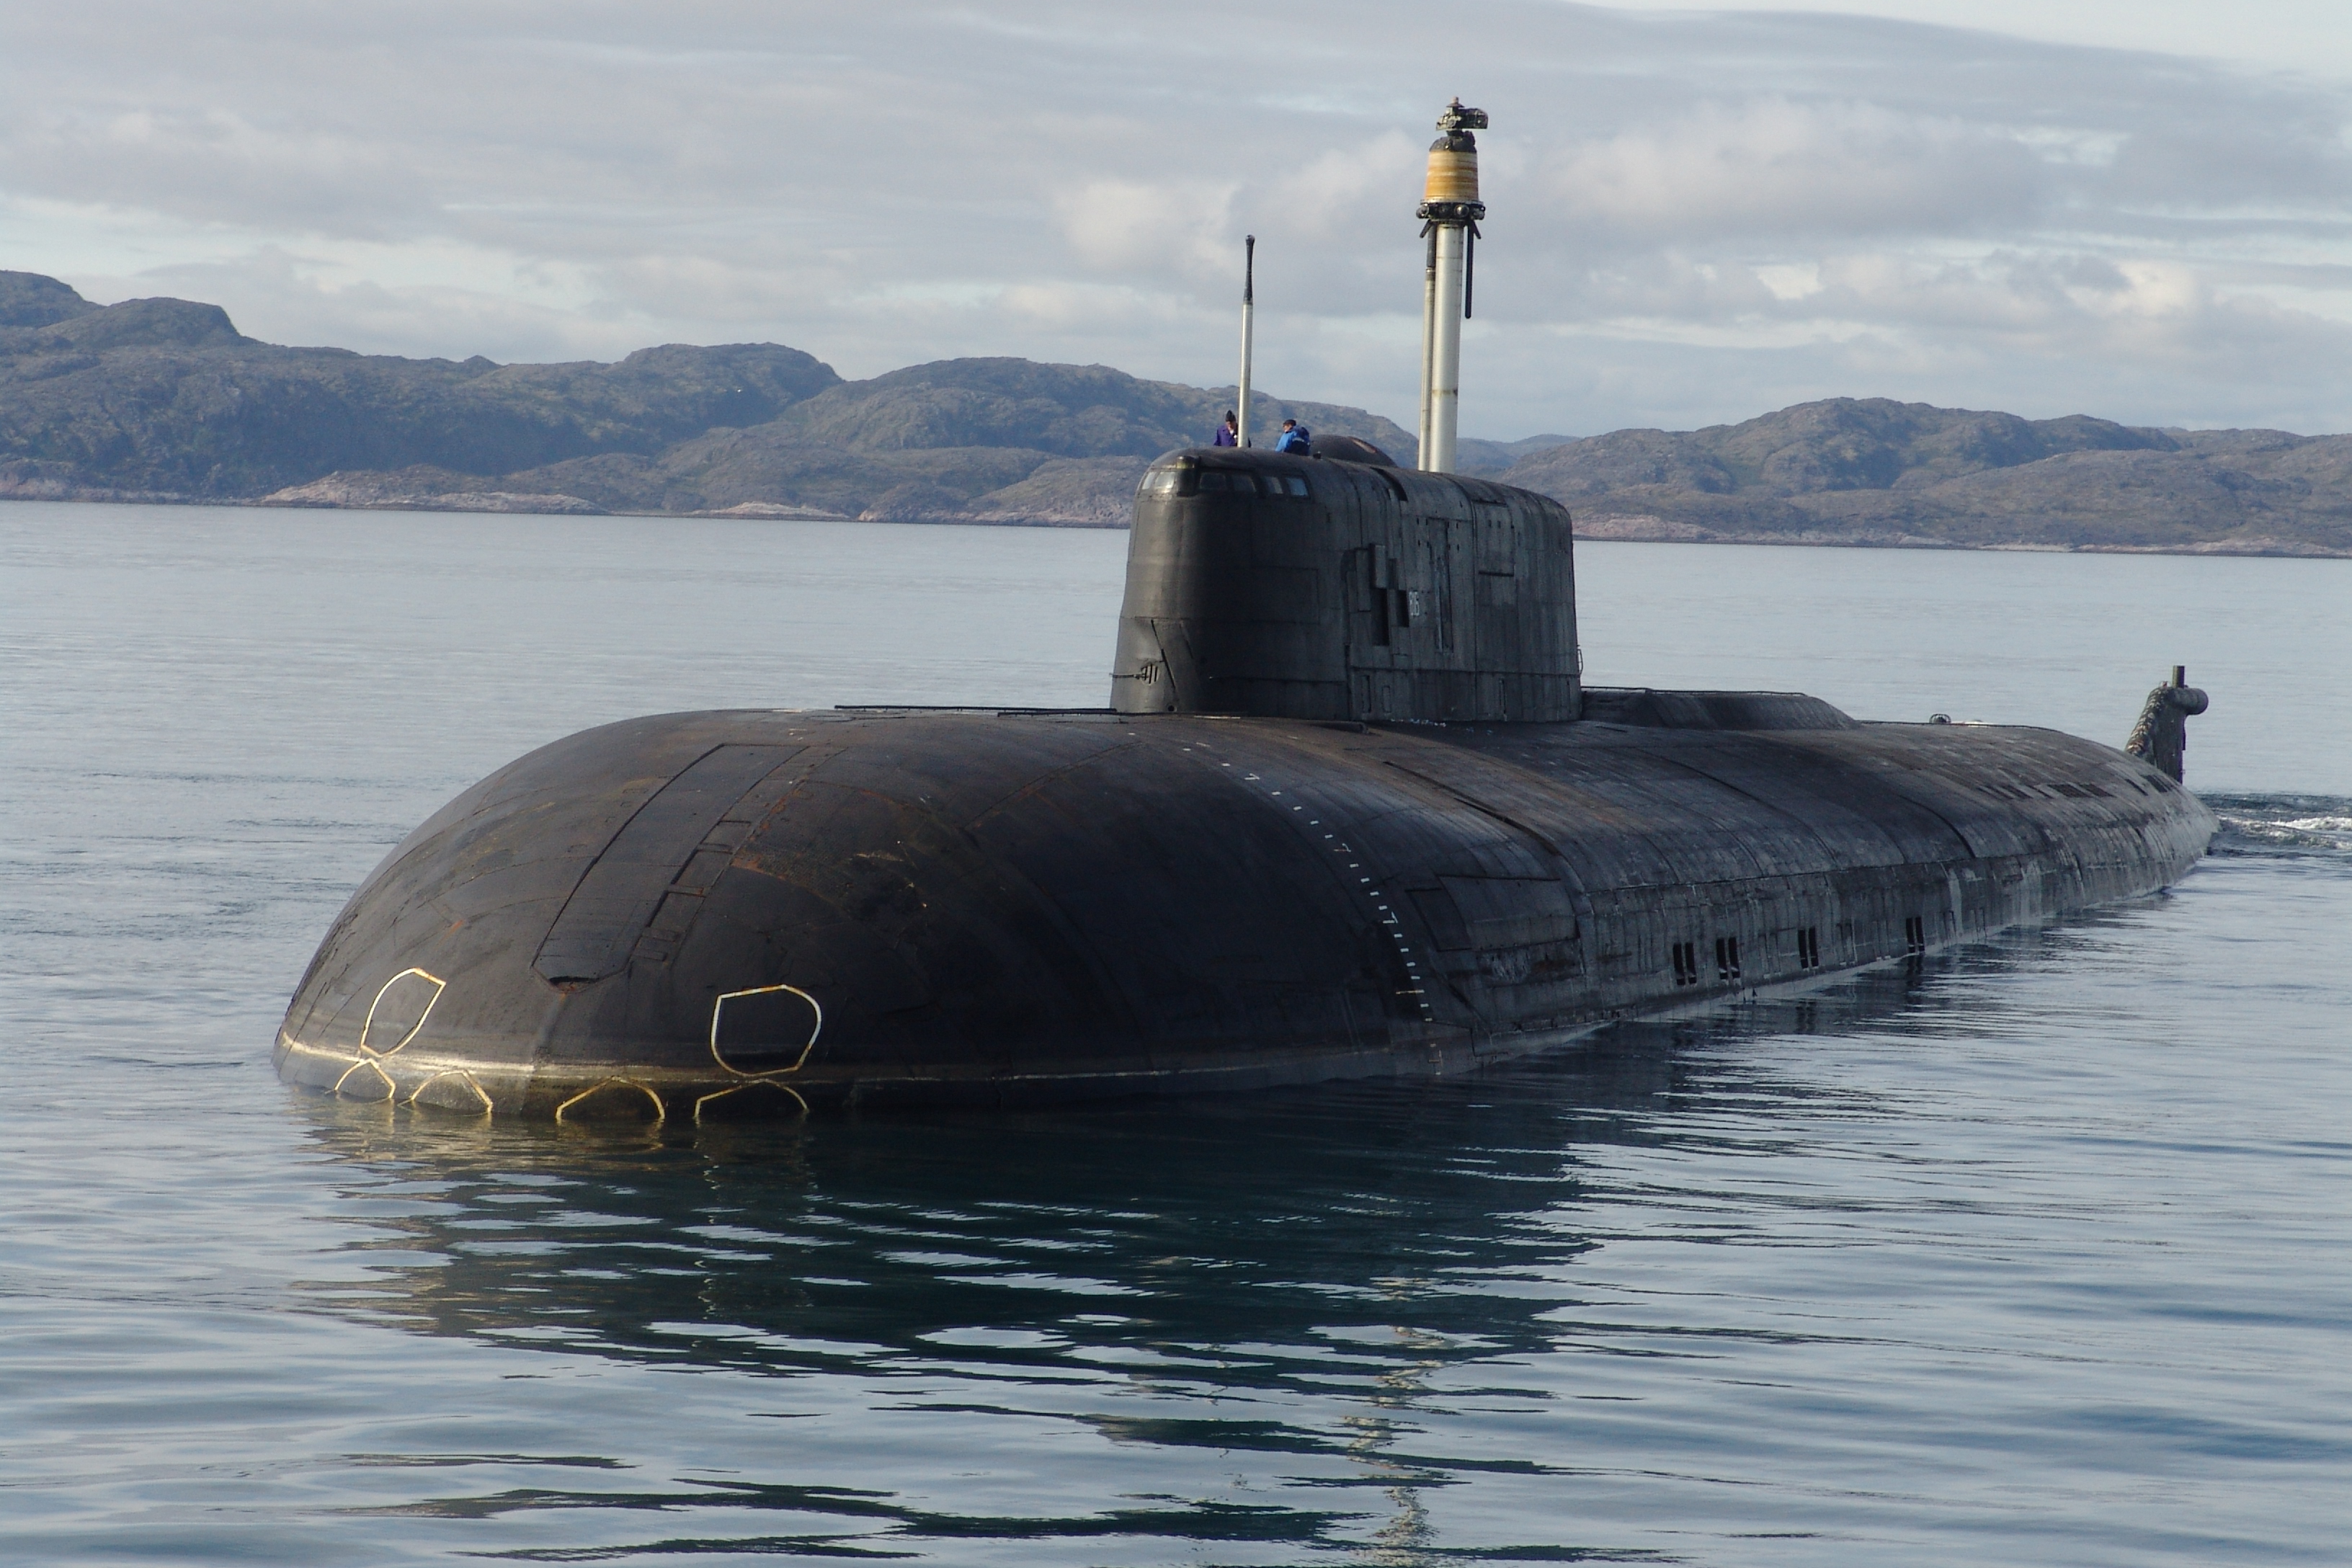 Пл пр т. Лодки 949а Антей. Подводные лодки проекта 949а «Антей». Атомный подводный крейсер к-186 "Омск". Проект 949а подводная лодка.